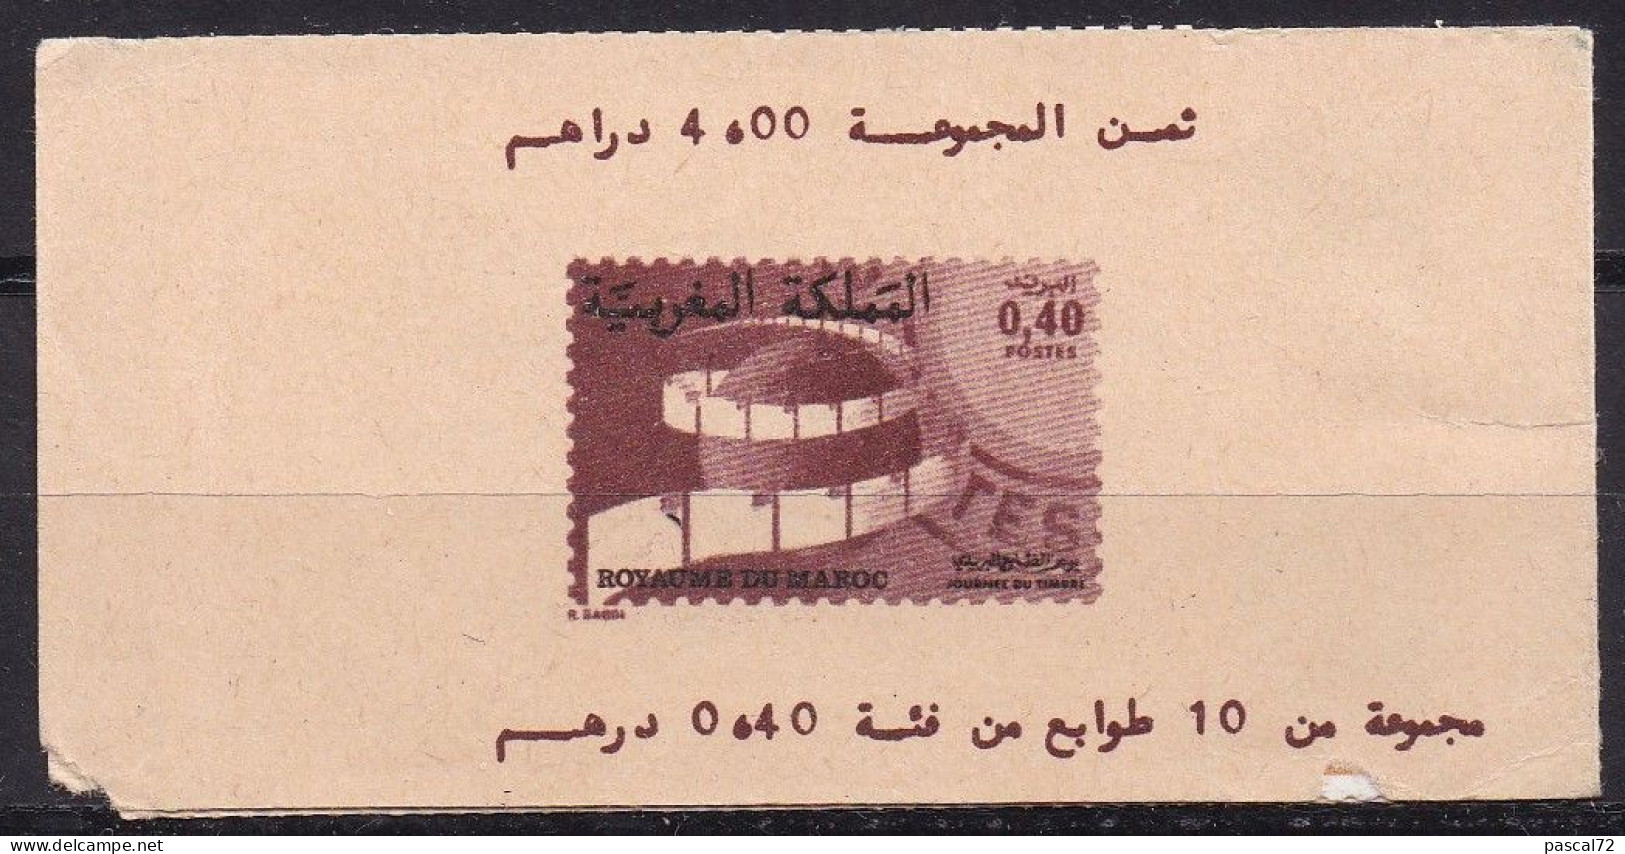 MAROC 1979 CARNET 10 TIMBRES Y&T N° C834 N** - Marokko (1956-...)